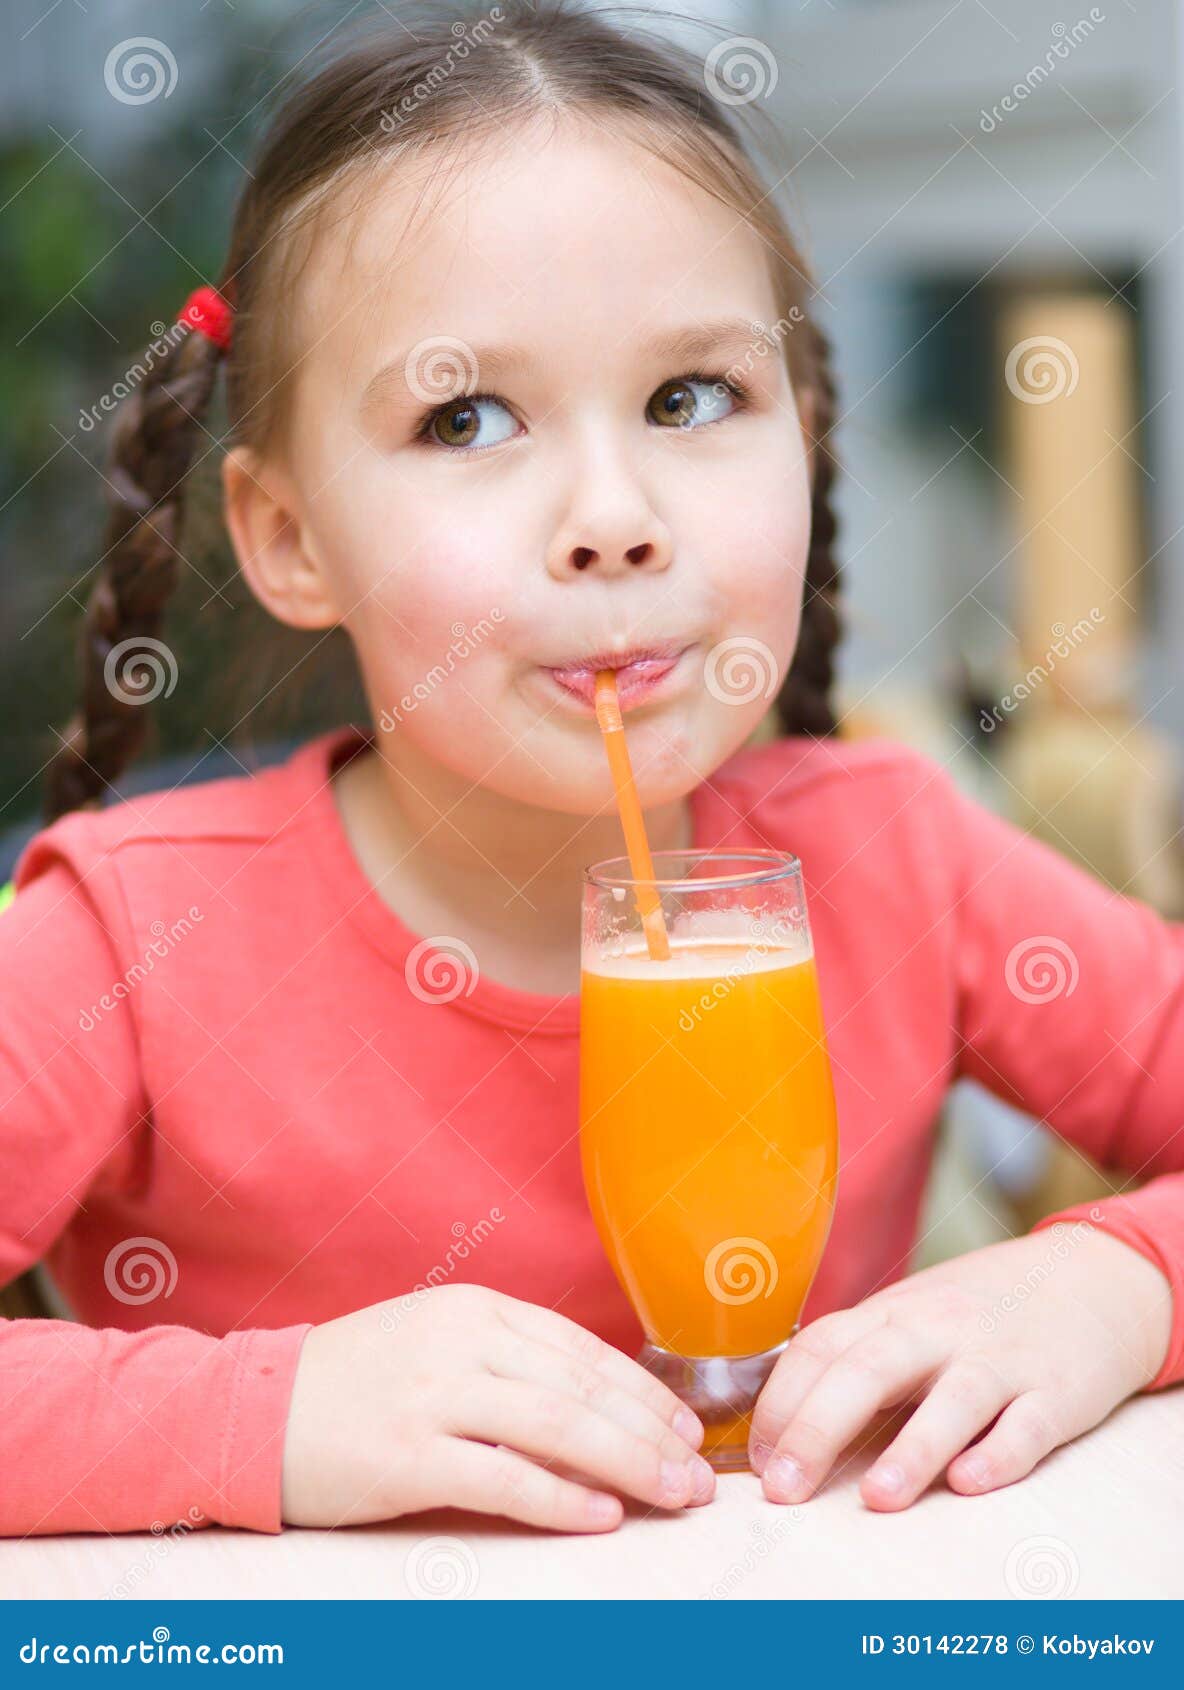 Пьет сок написать. Девочка с соком. Juice девочки. Ребенок пьет сок. Маленькая девочка с соком.